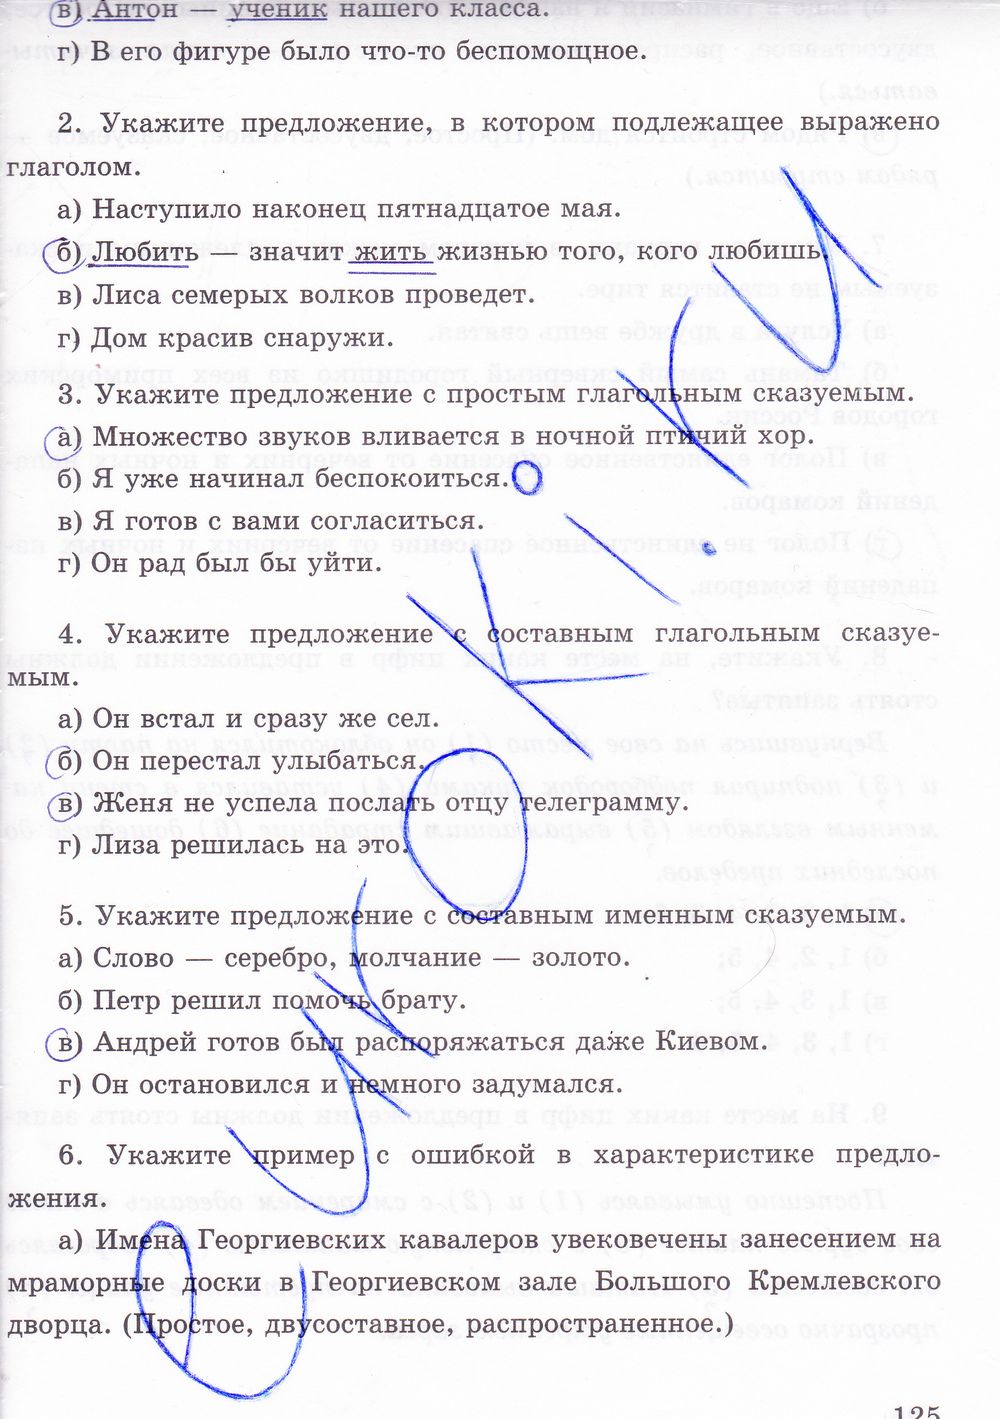 ГДЗ Русский язык 8 класс - стр. 125